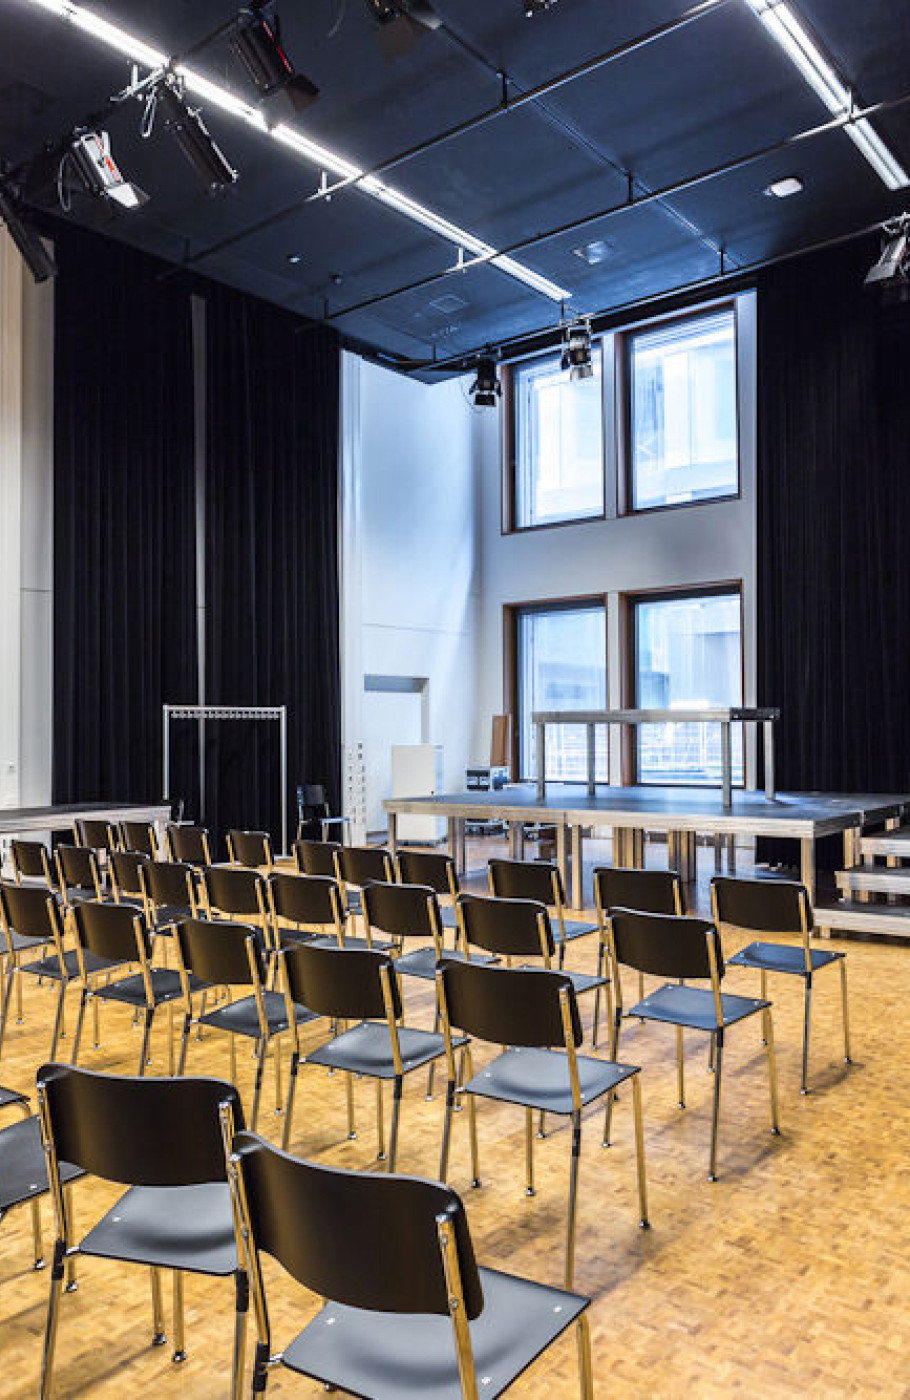 Aufnahme eines kleinen bestuhlten Hörsaals der pädagogischen Hochschule in Zürich